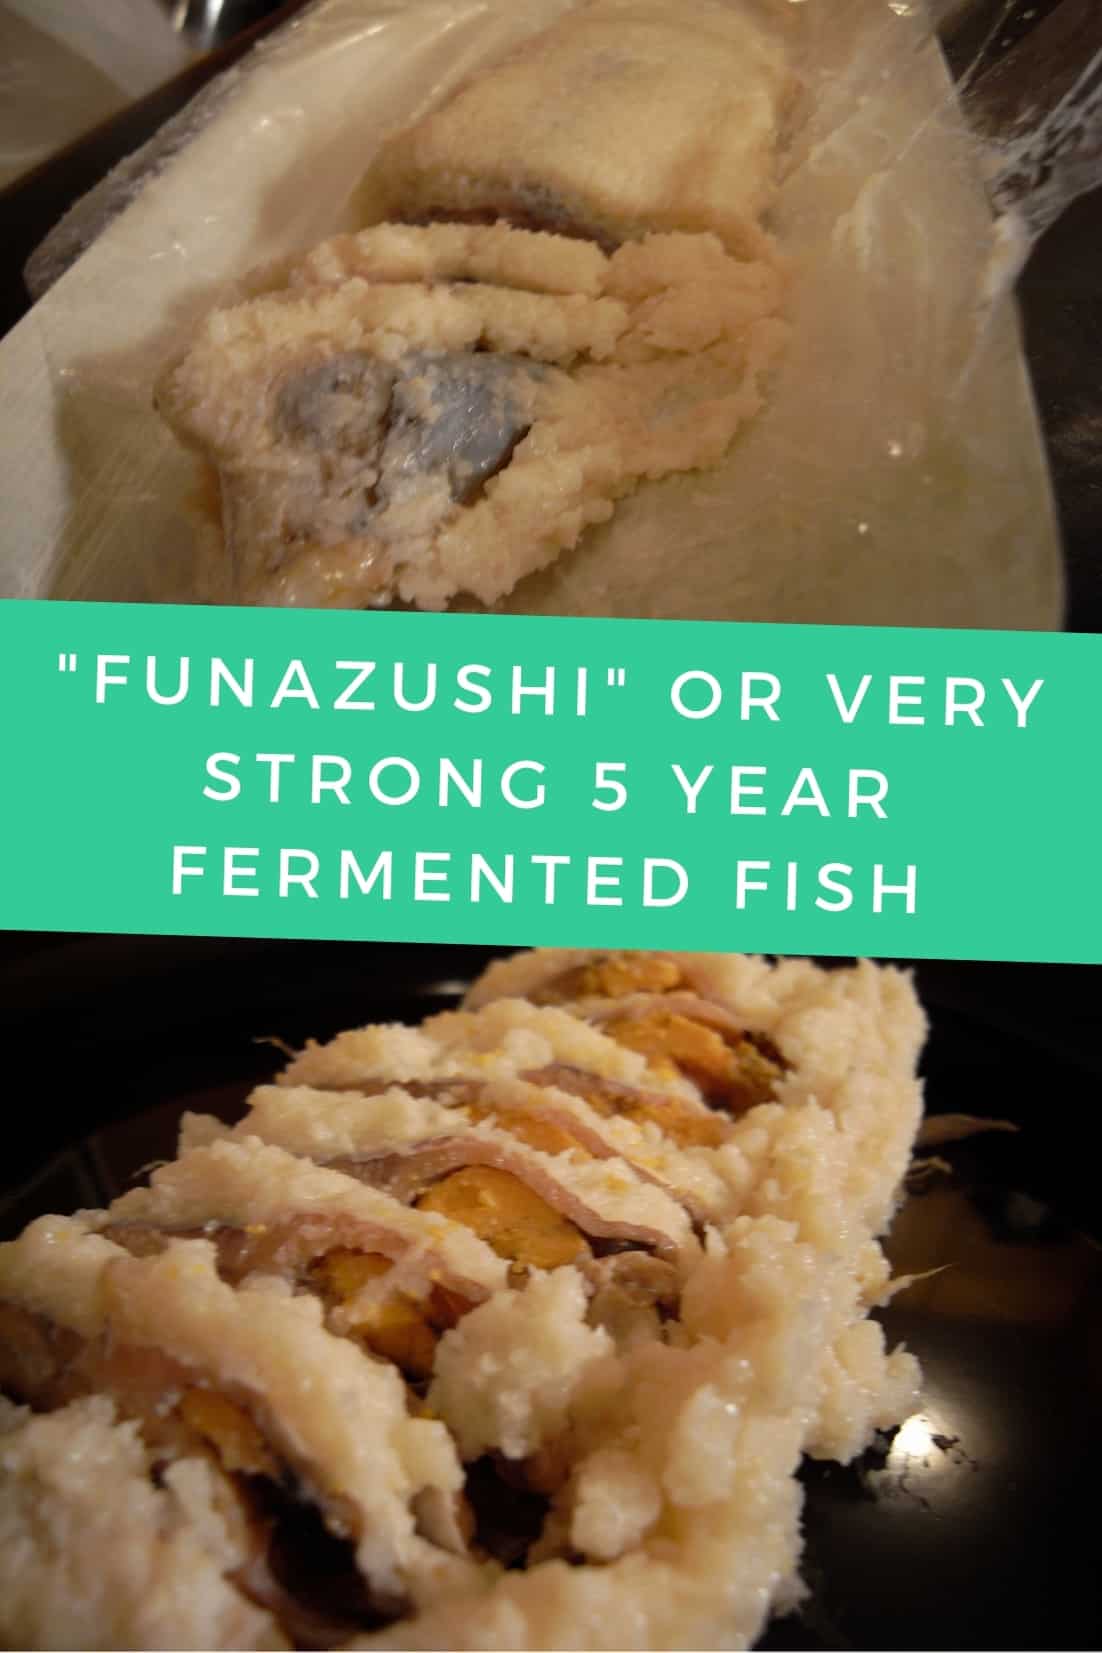 ฟุนะซึชิ หรือ ปลาร้า 5 ปี ที่แข็งแรงมาก